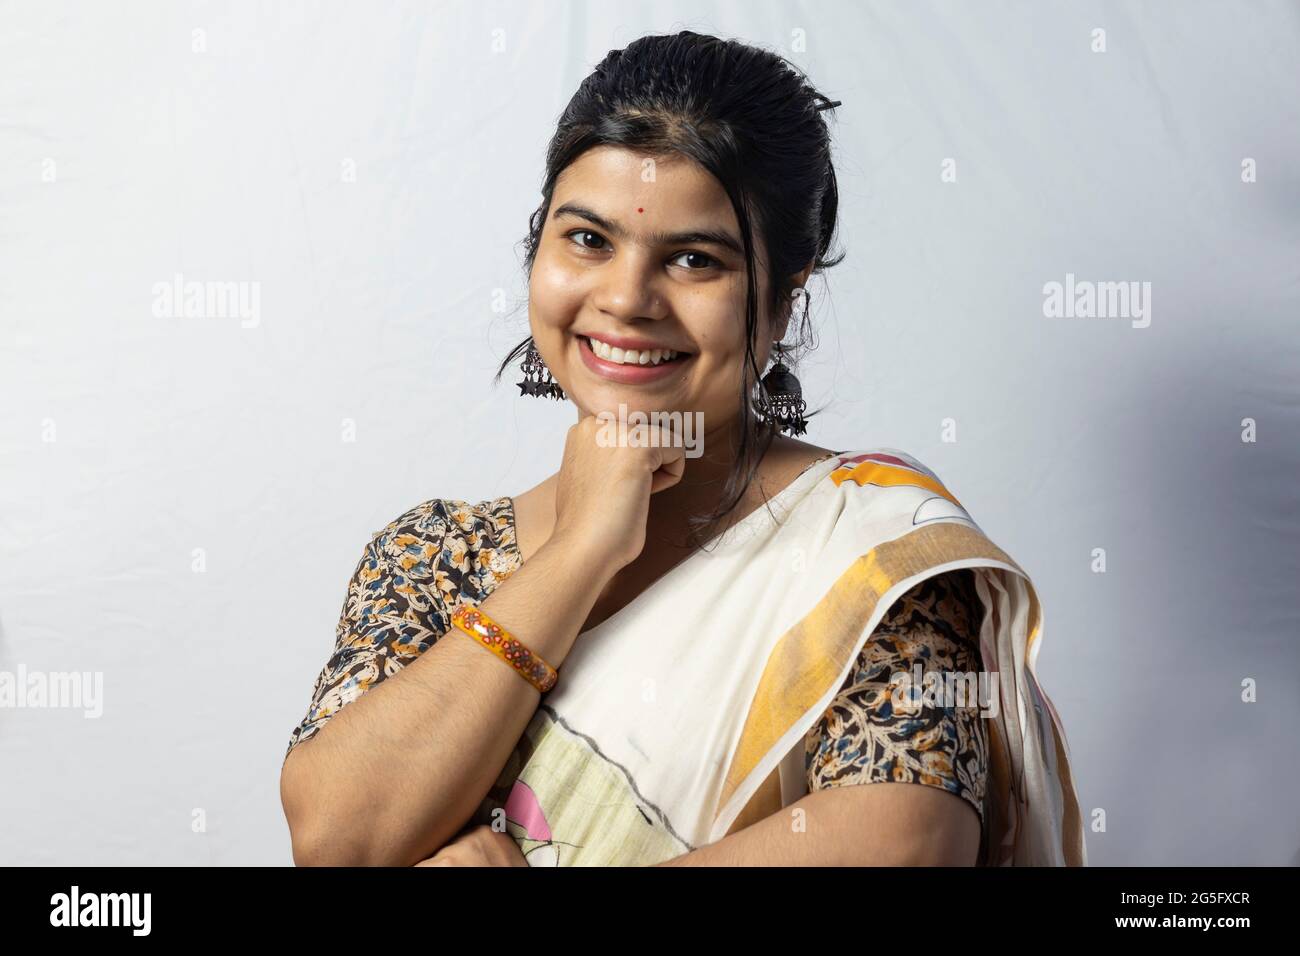 Isolée sur fond blanc une femelle indienne en saree sourit à l'appareil photo avec la main sous le menton pose sur fond blanc Banque D'Images